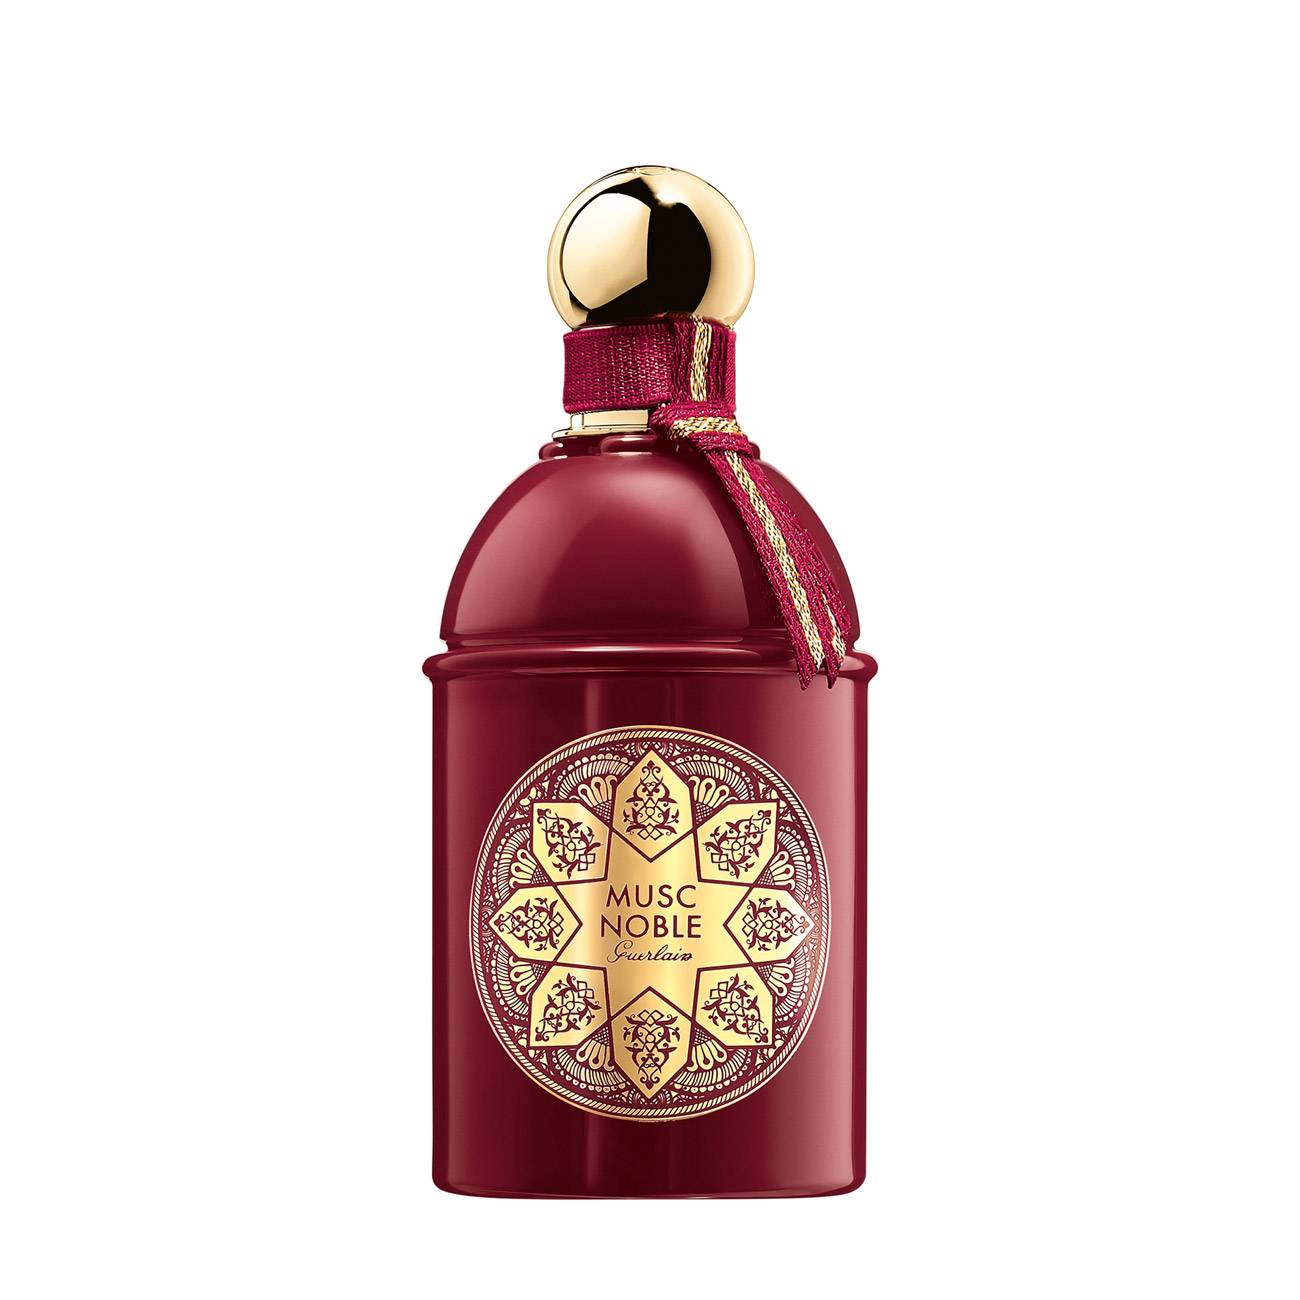 Apa de Parfum Guerlain LES ABSOLUS D’ORIENT MUSC NOBLE 125ml cu comanda online